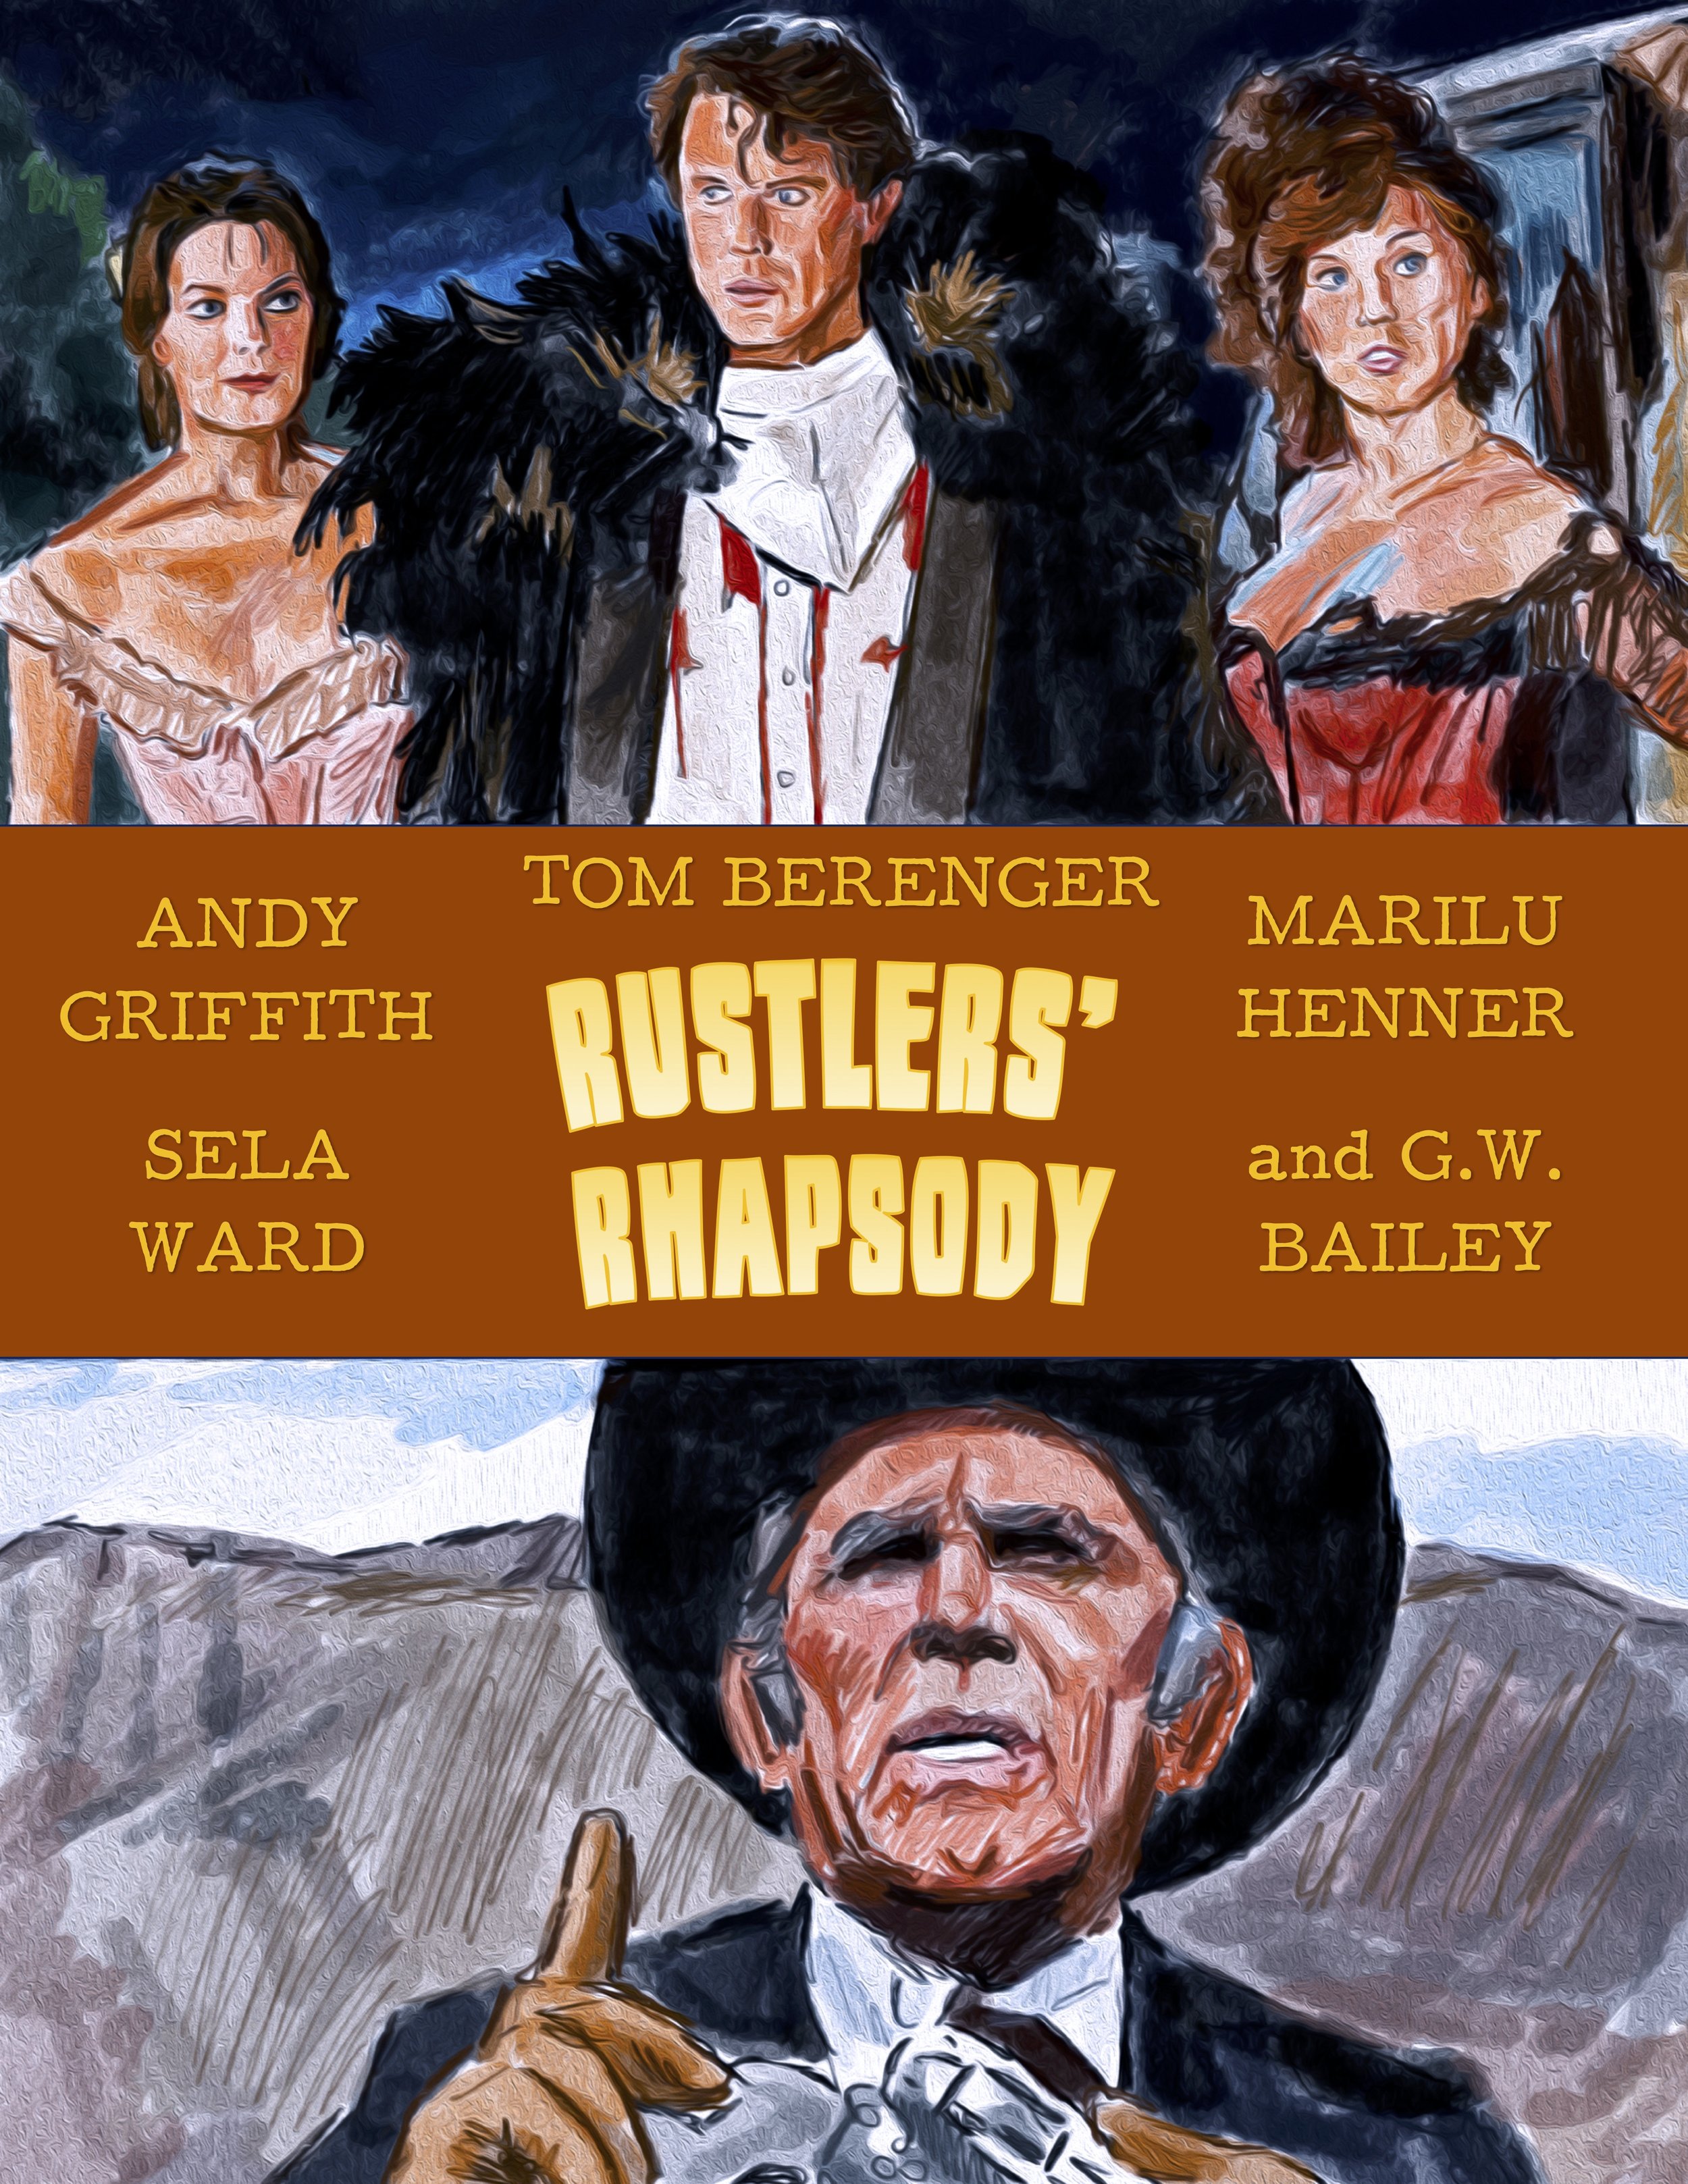 Rustlers' Rhapsody (1985)